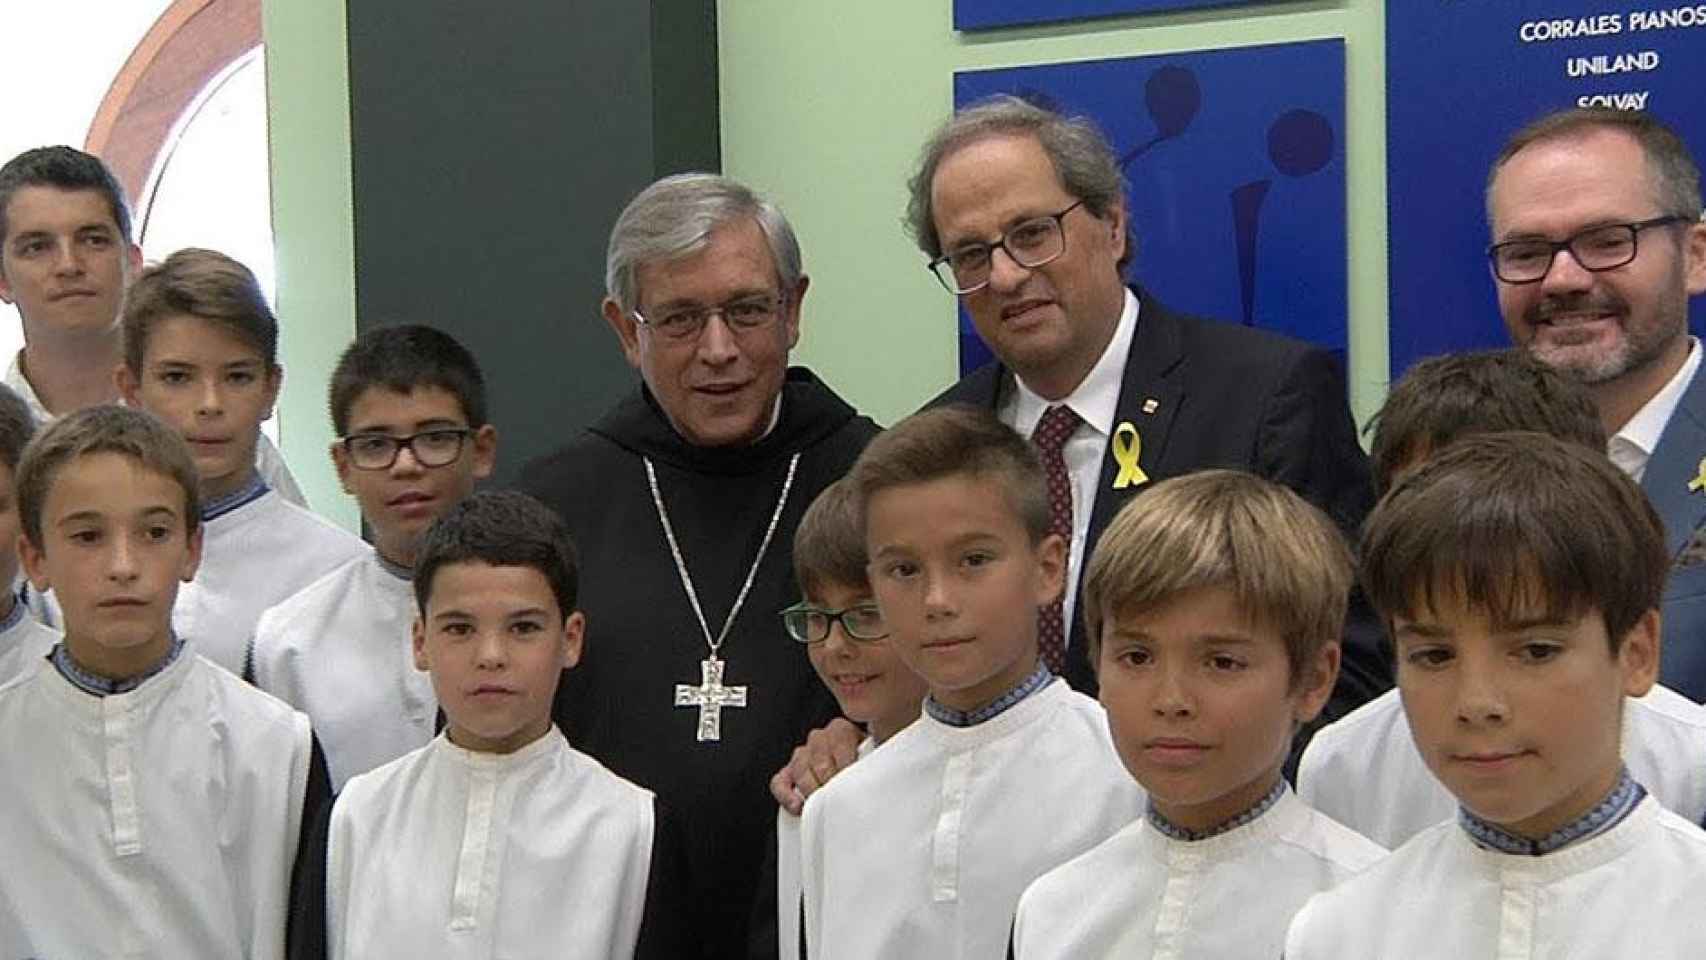 Quim Torra, cuyo partido ha eliminado la religión de su programa, durante una visita al abad de Montserrat, Josep Maria Soler / ABADÍA DE MONTSERRAT